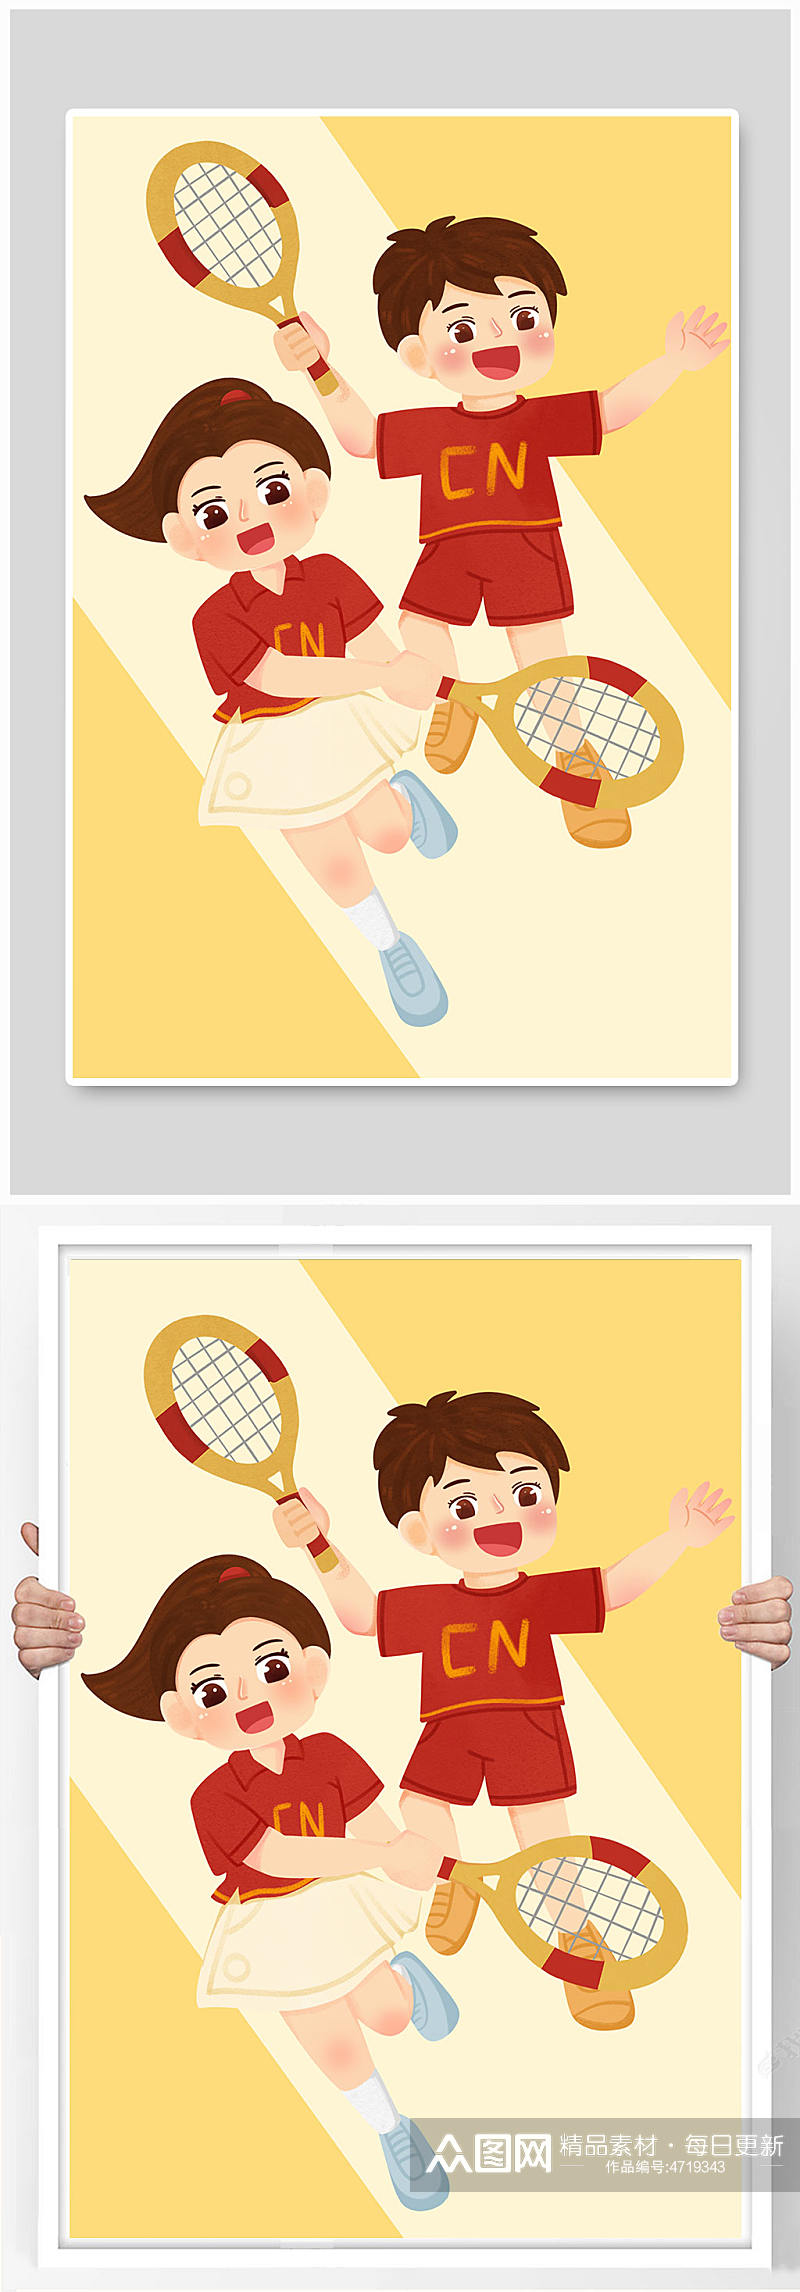 男女双打网球运动人物插画素材